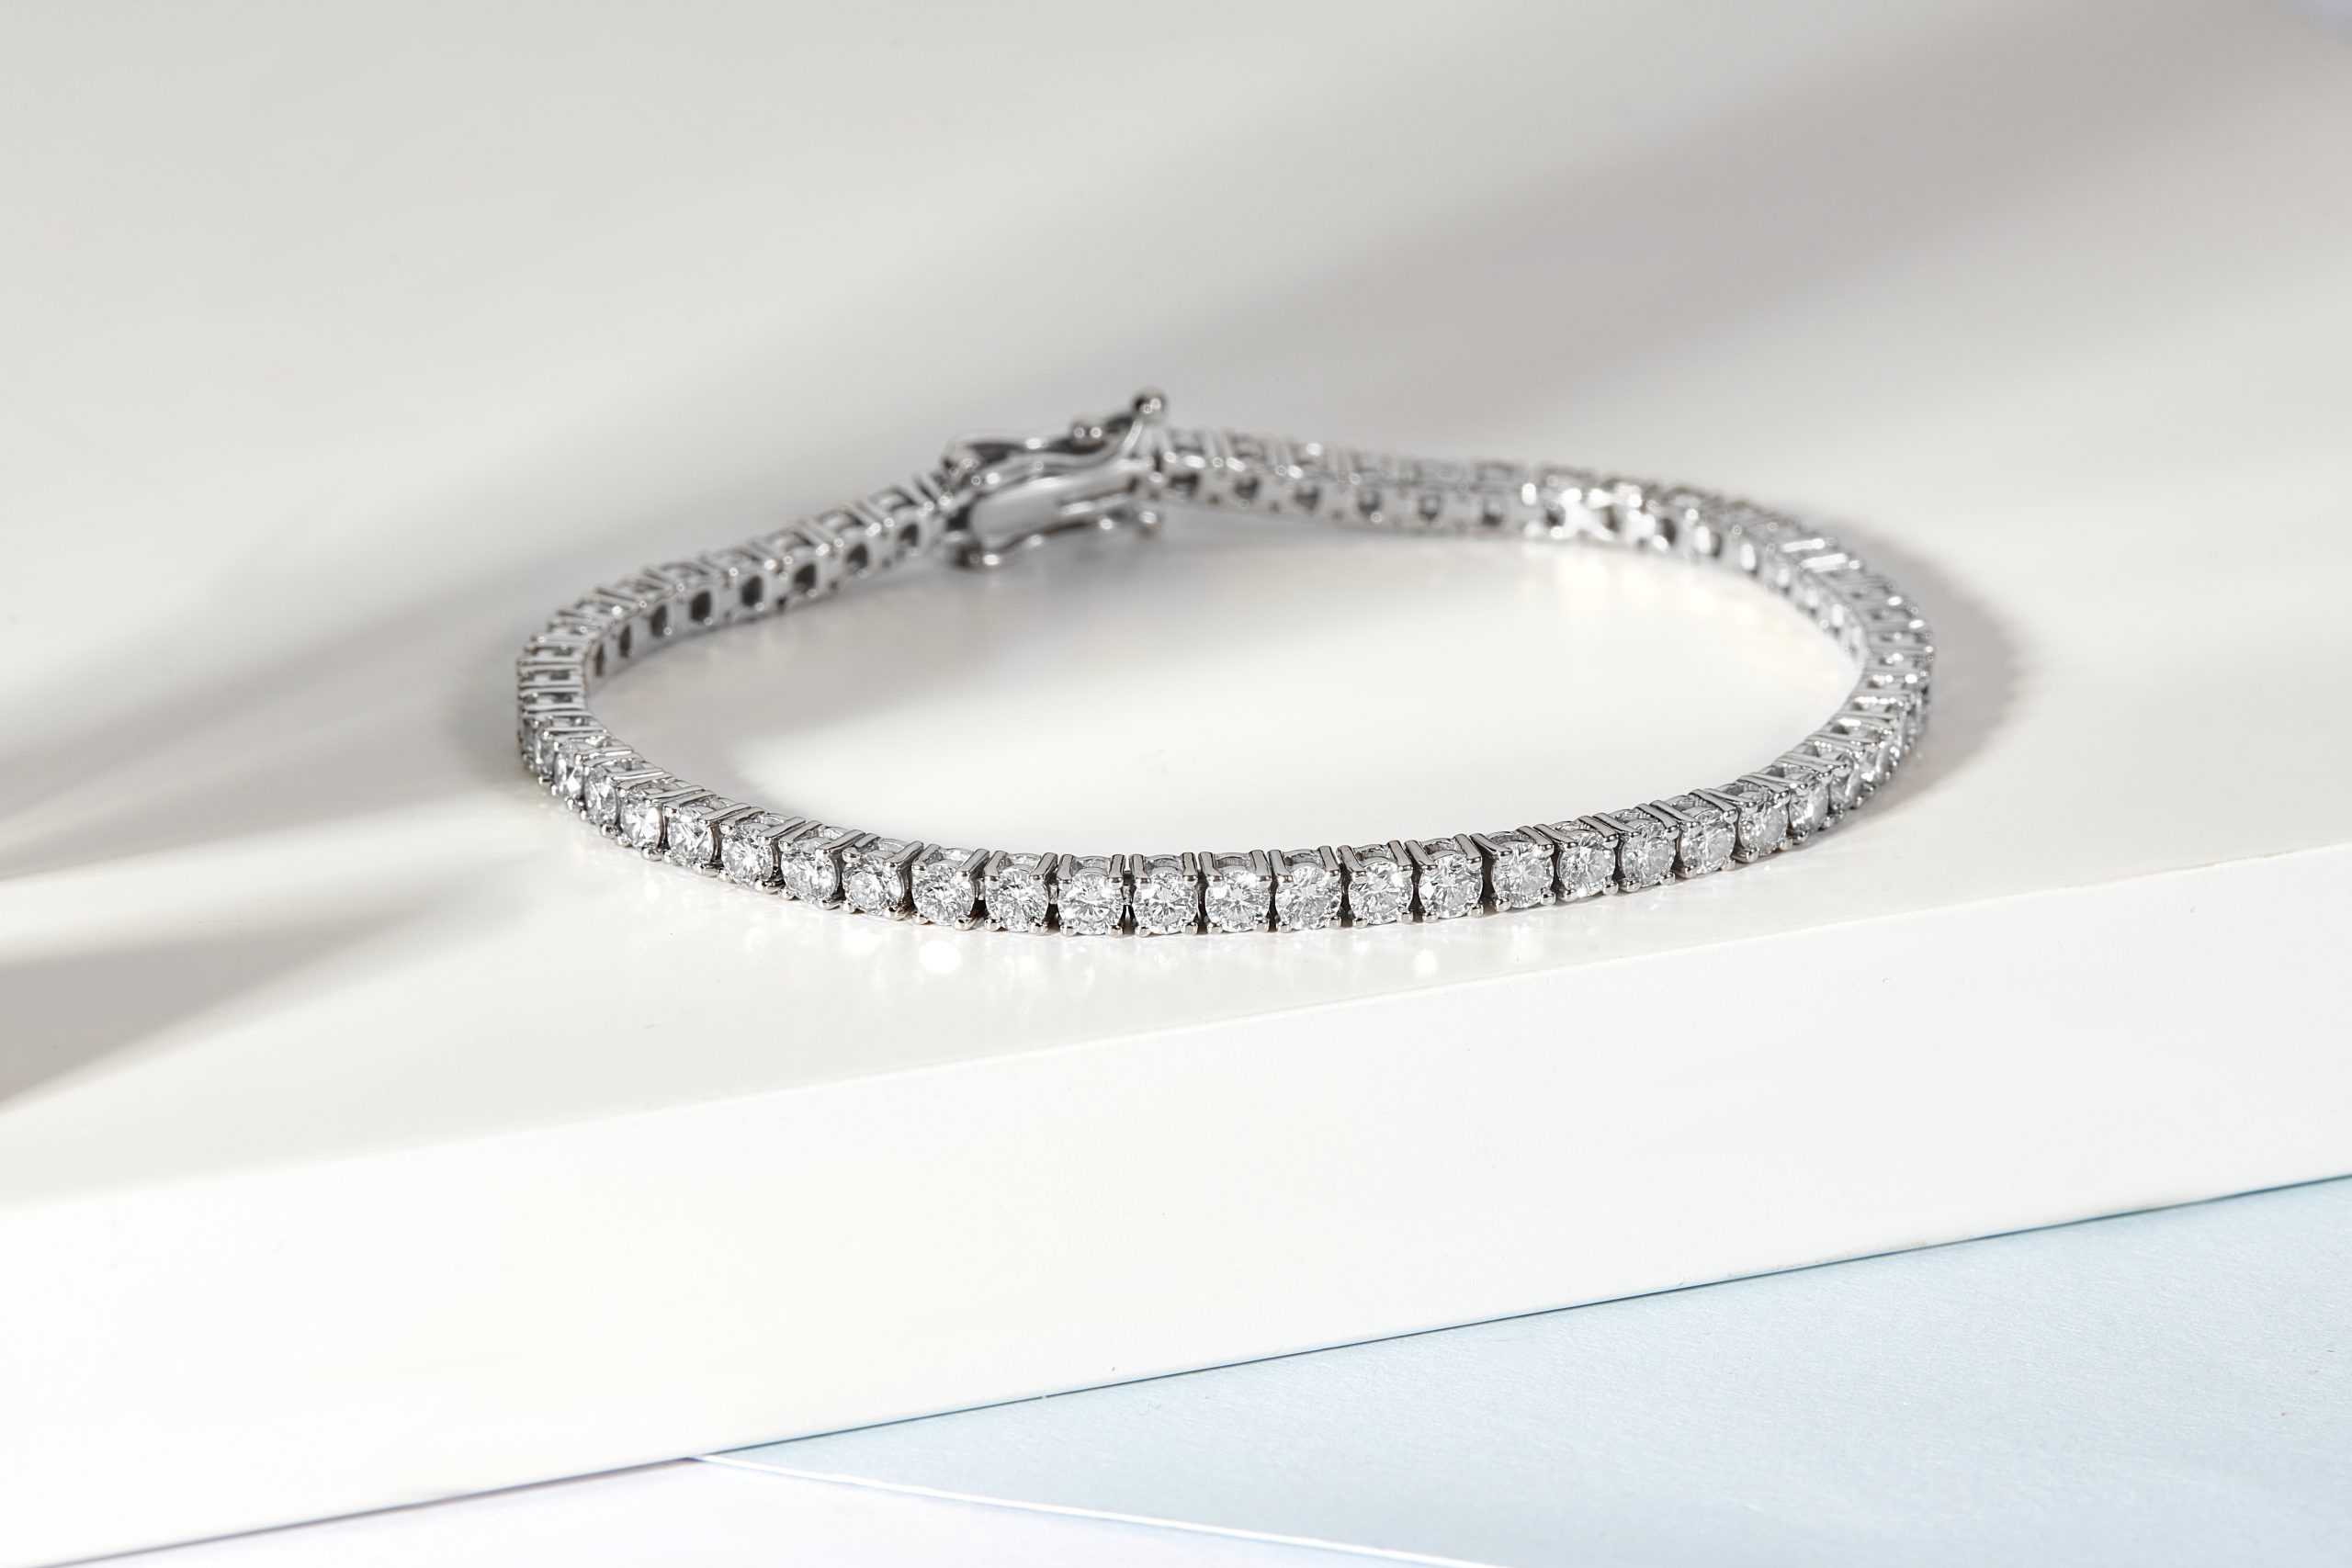 Diamond bracelet by Lottie Leigh Bespoke Jewellery